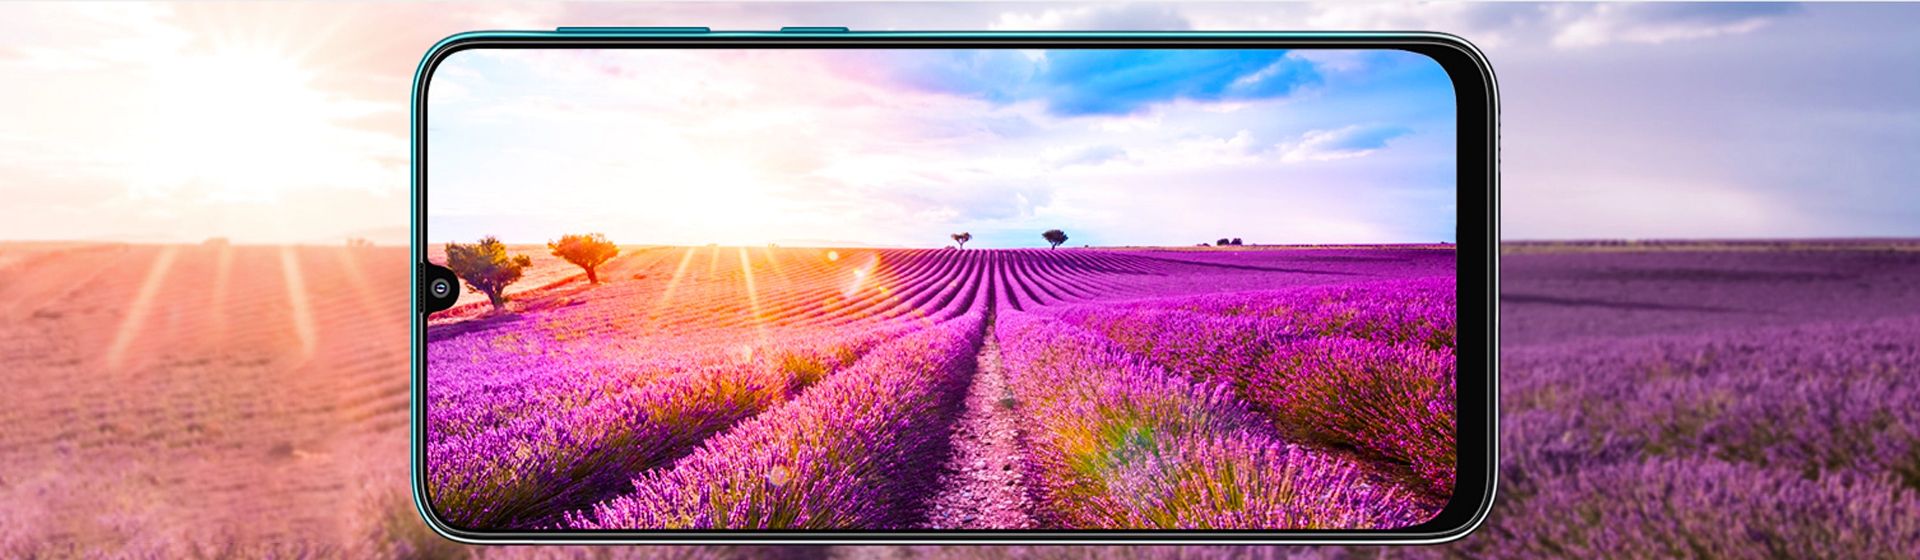 Samsung lança Galaxy S21 no Brasil com preços a partir de R$ 5.999 -  09/02/2021 - Tec - Folha